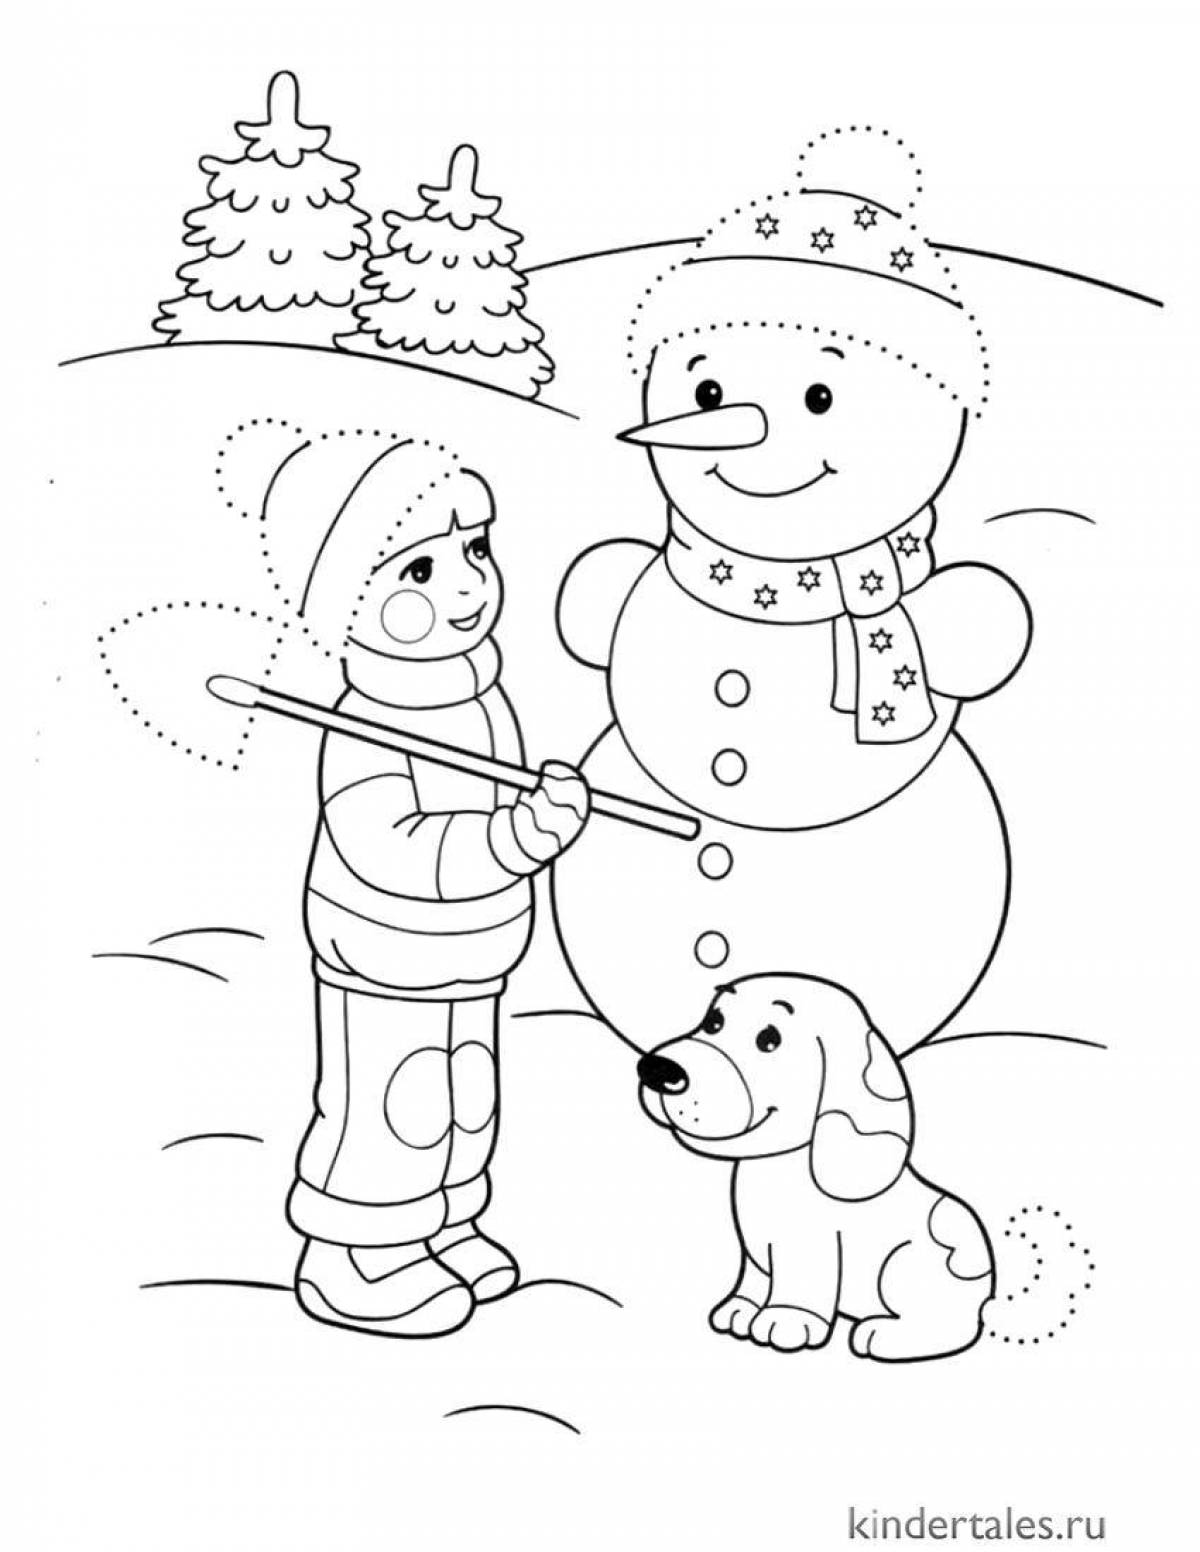 Памятная зимняя забавная раскраска для детей 6-7 лет